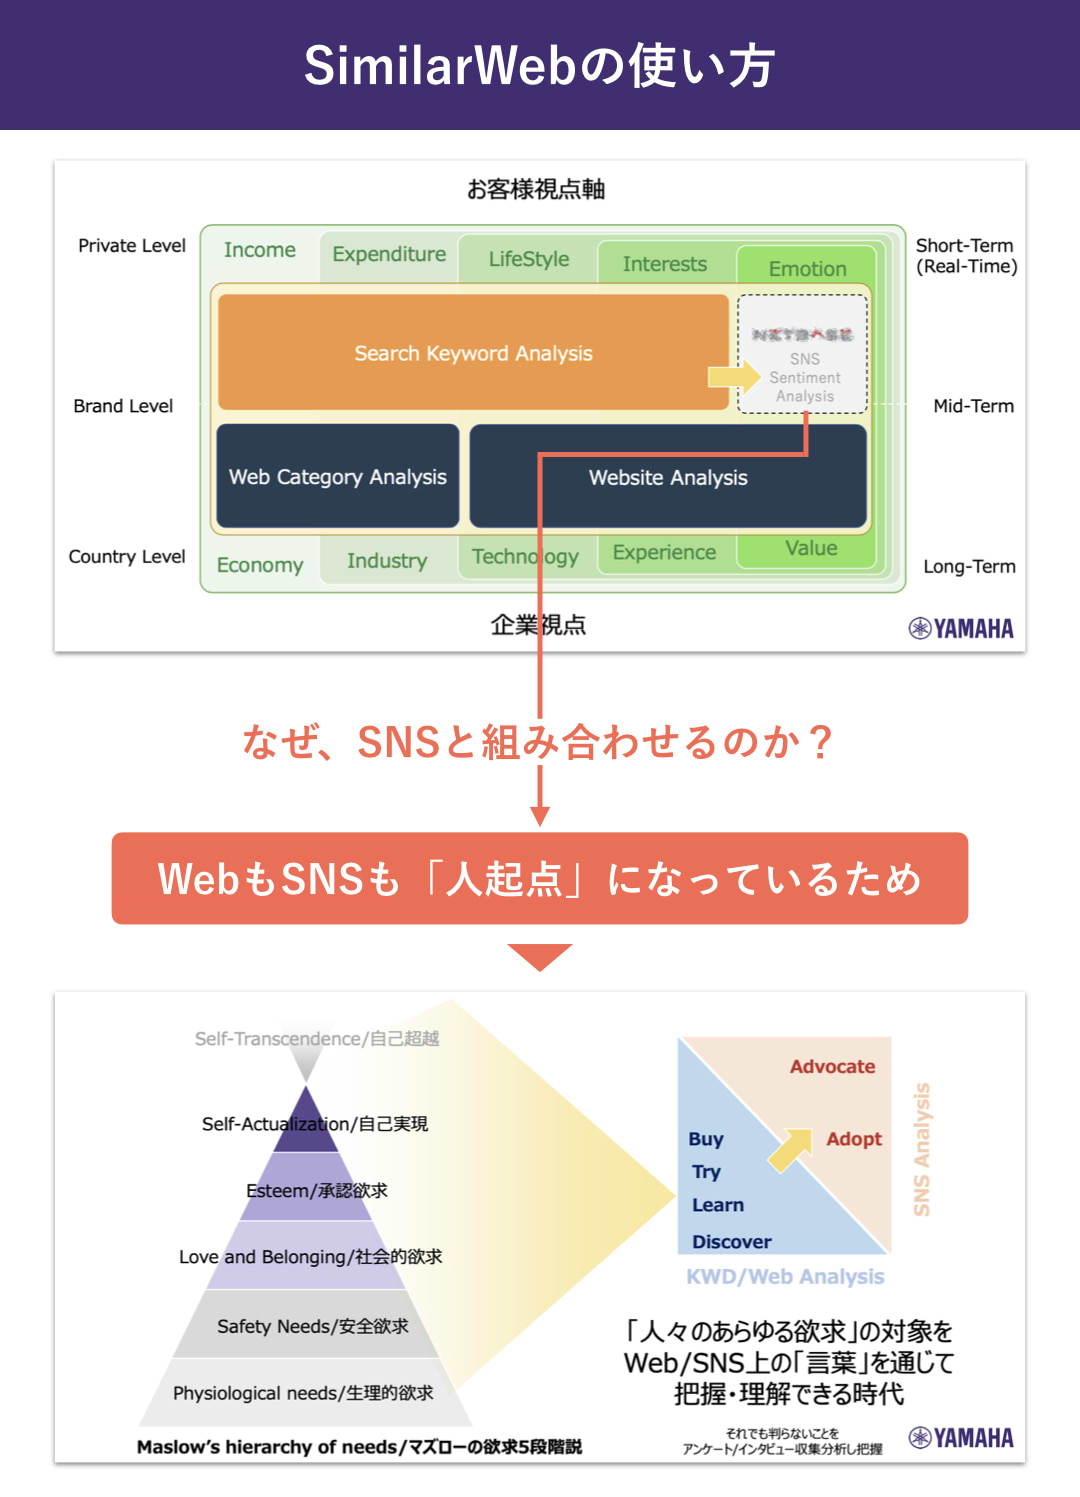 ヤマハ株式会社：濱崎司_SimilarWebの使い方